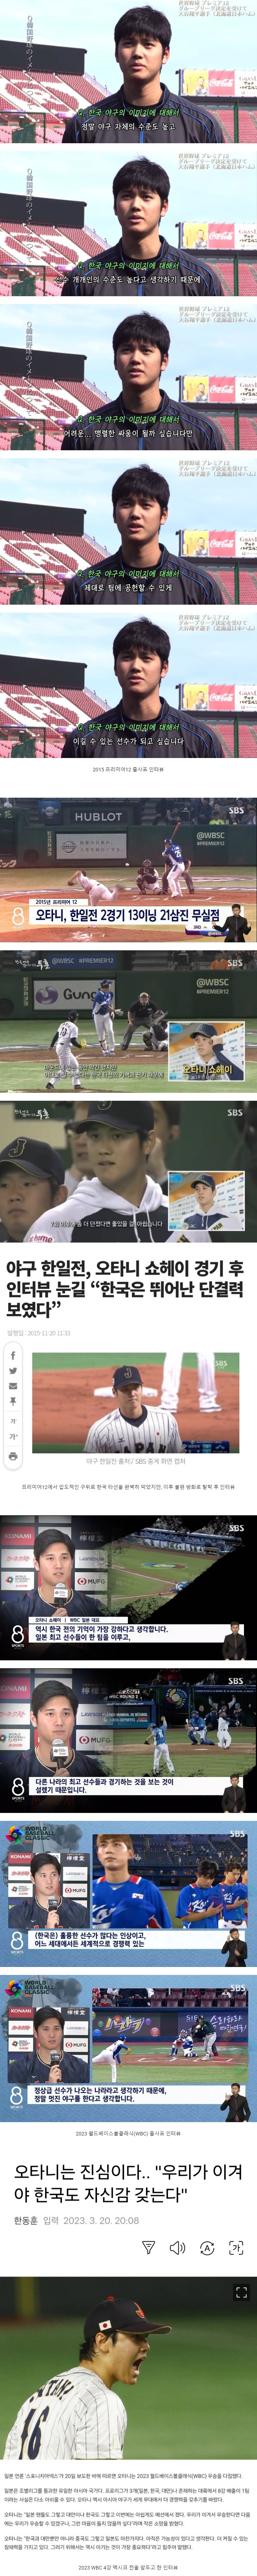 한국 야구에 대한 오타니의 한결 같은 스탠스